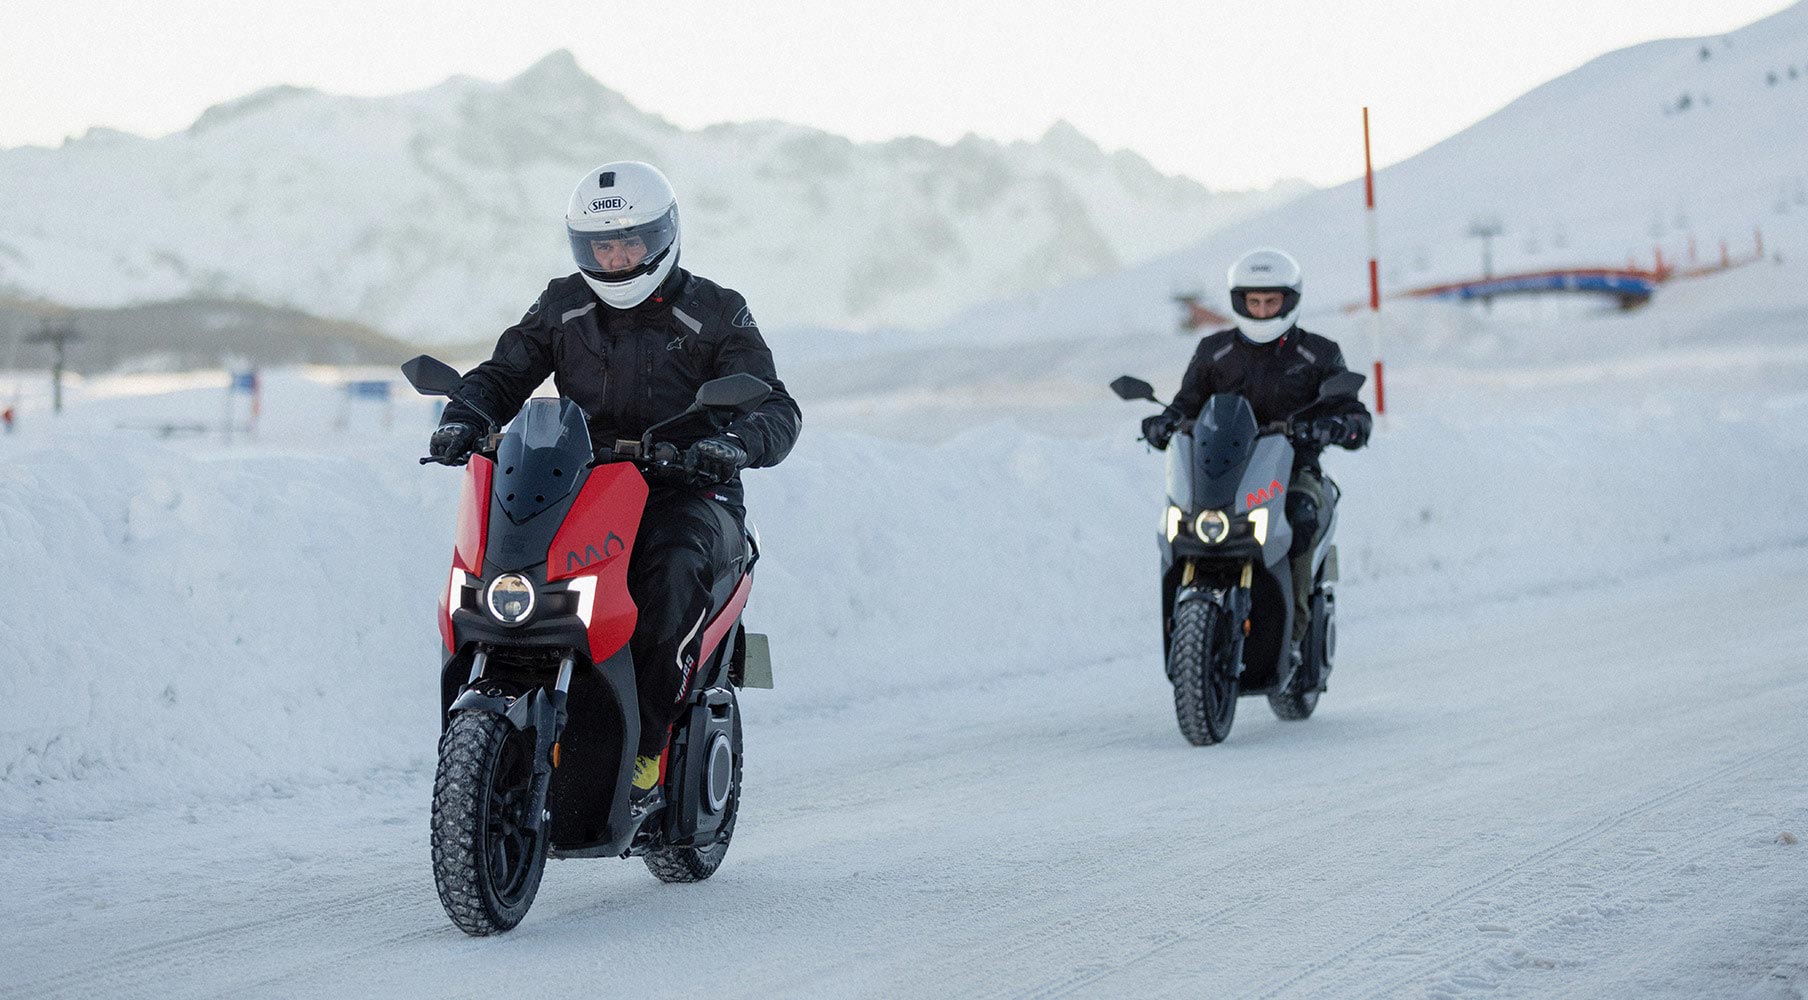 La moto eléctrica se enfrentó a 4,400 kilómetros de nieve, arena, agua, grava, a temperaturas entre los -10ºC y los 45ºC.